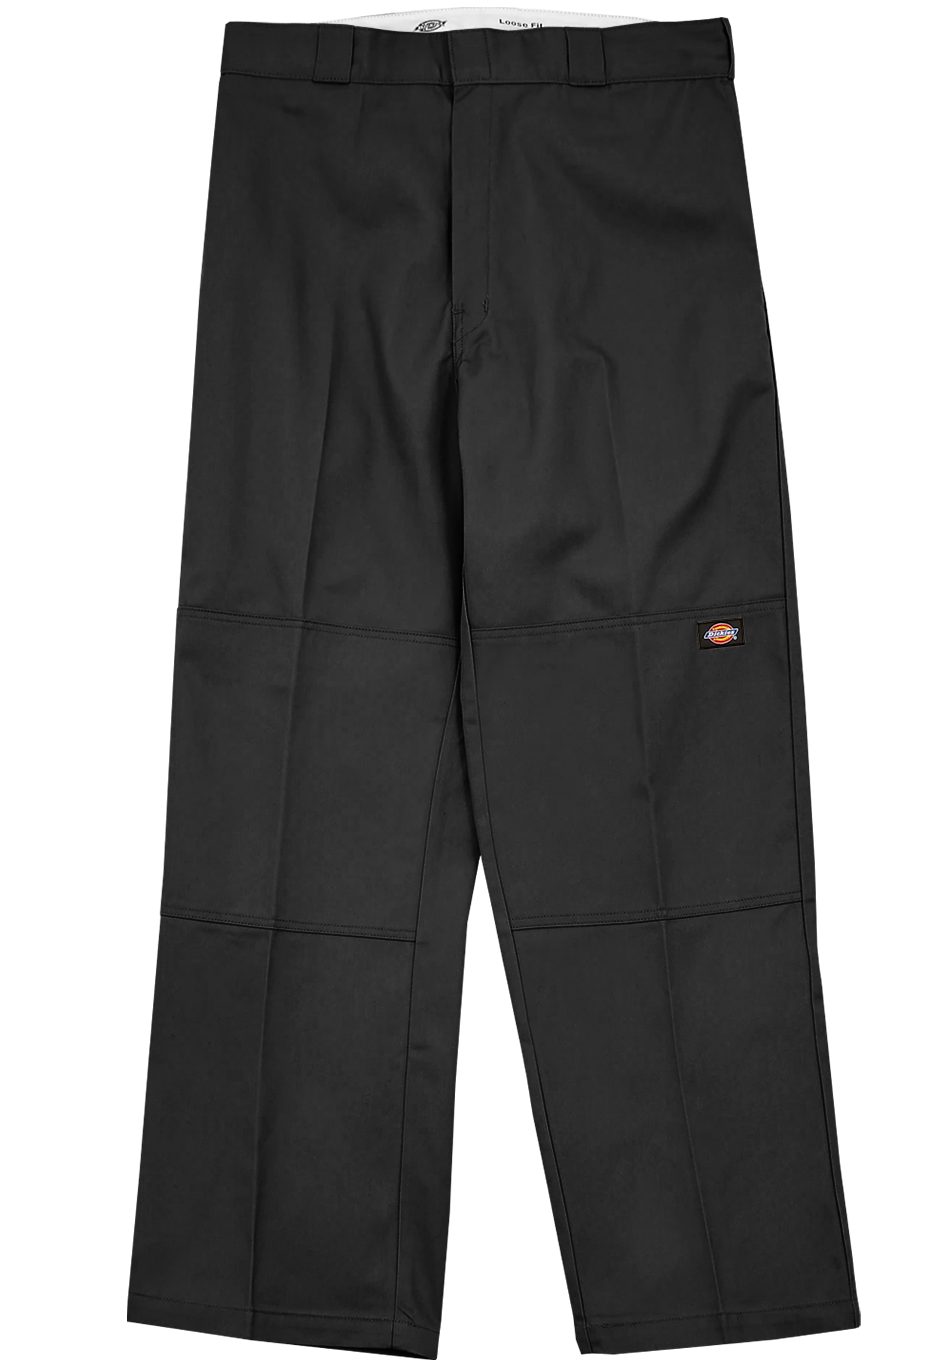 Pantalon de Travail Dickies Double Genoux Noir